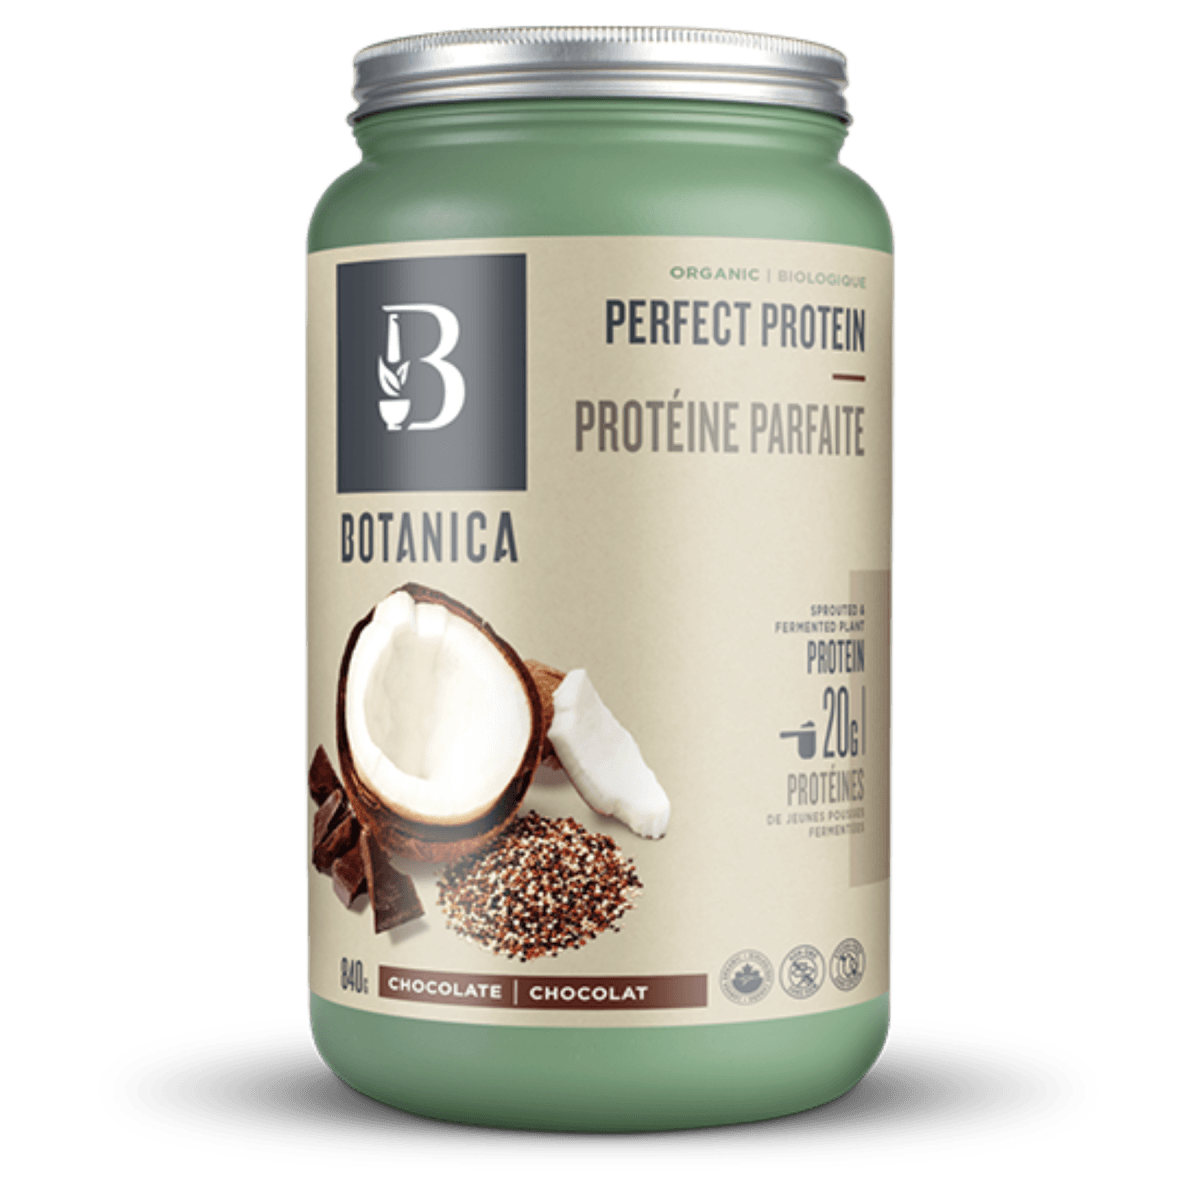 Protéine Parfaite (Certifié Biologique, Végétalienne) -Botanica -Gagné en Santé